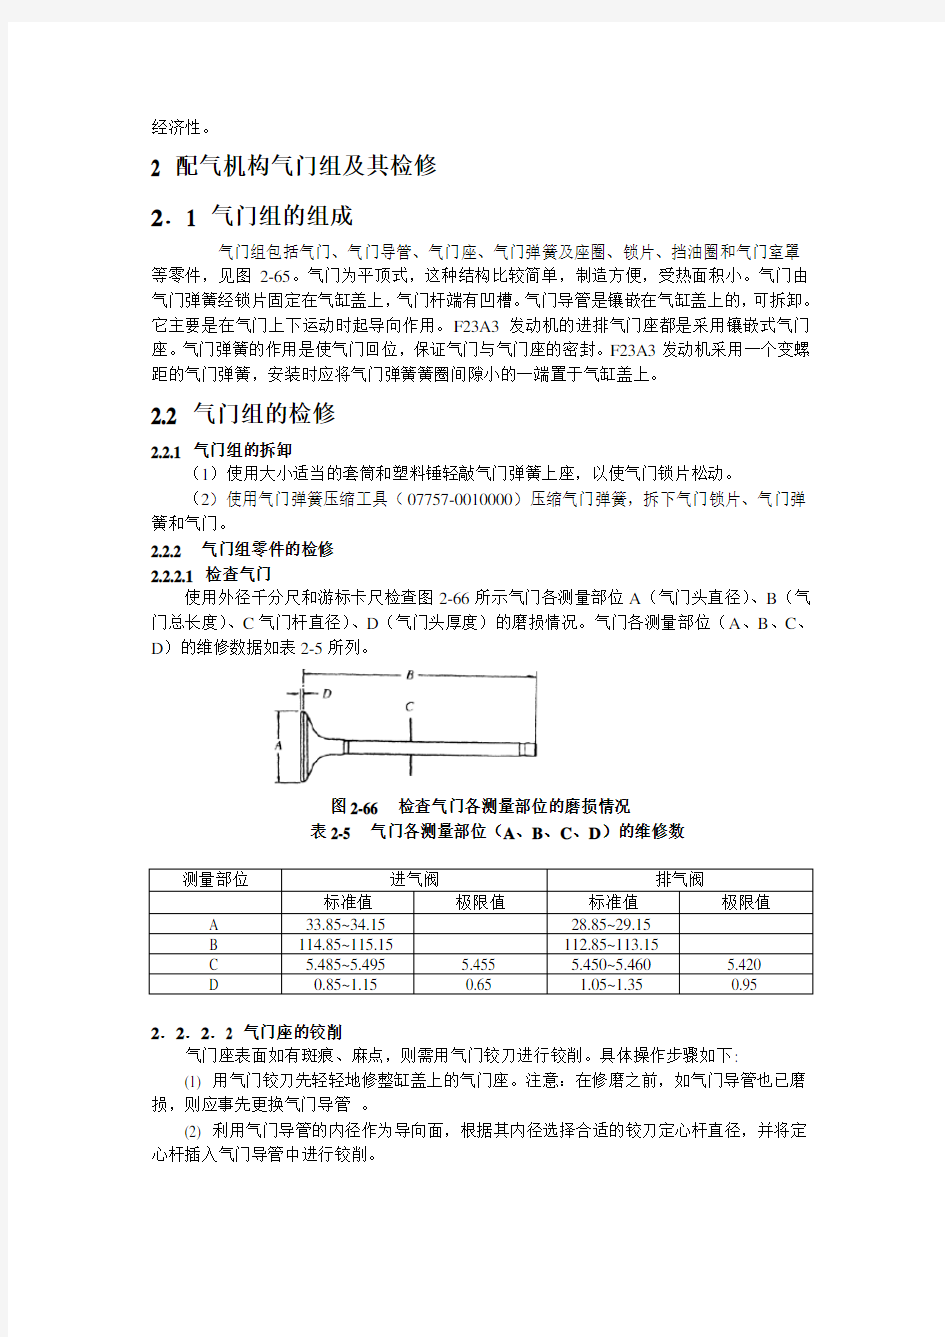 广州本田2.3L轿车维修手册_第2章3配气机构及其检修 (1)